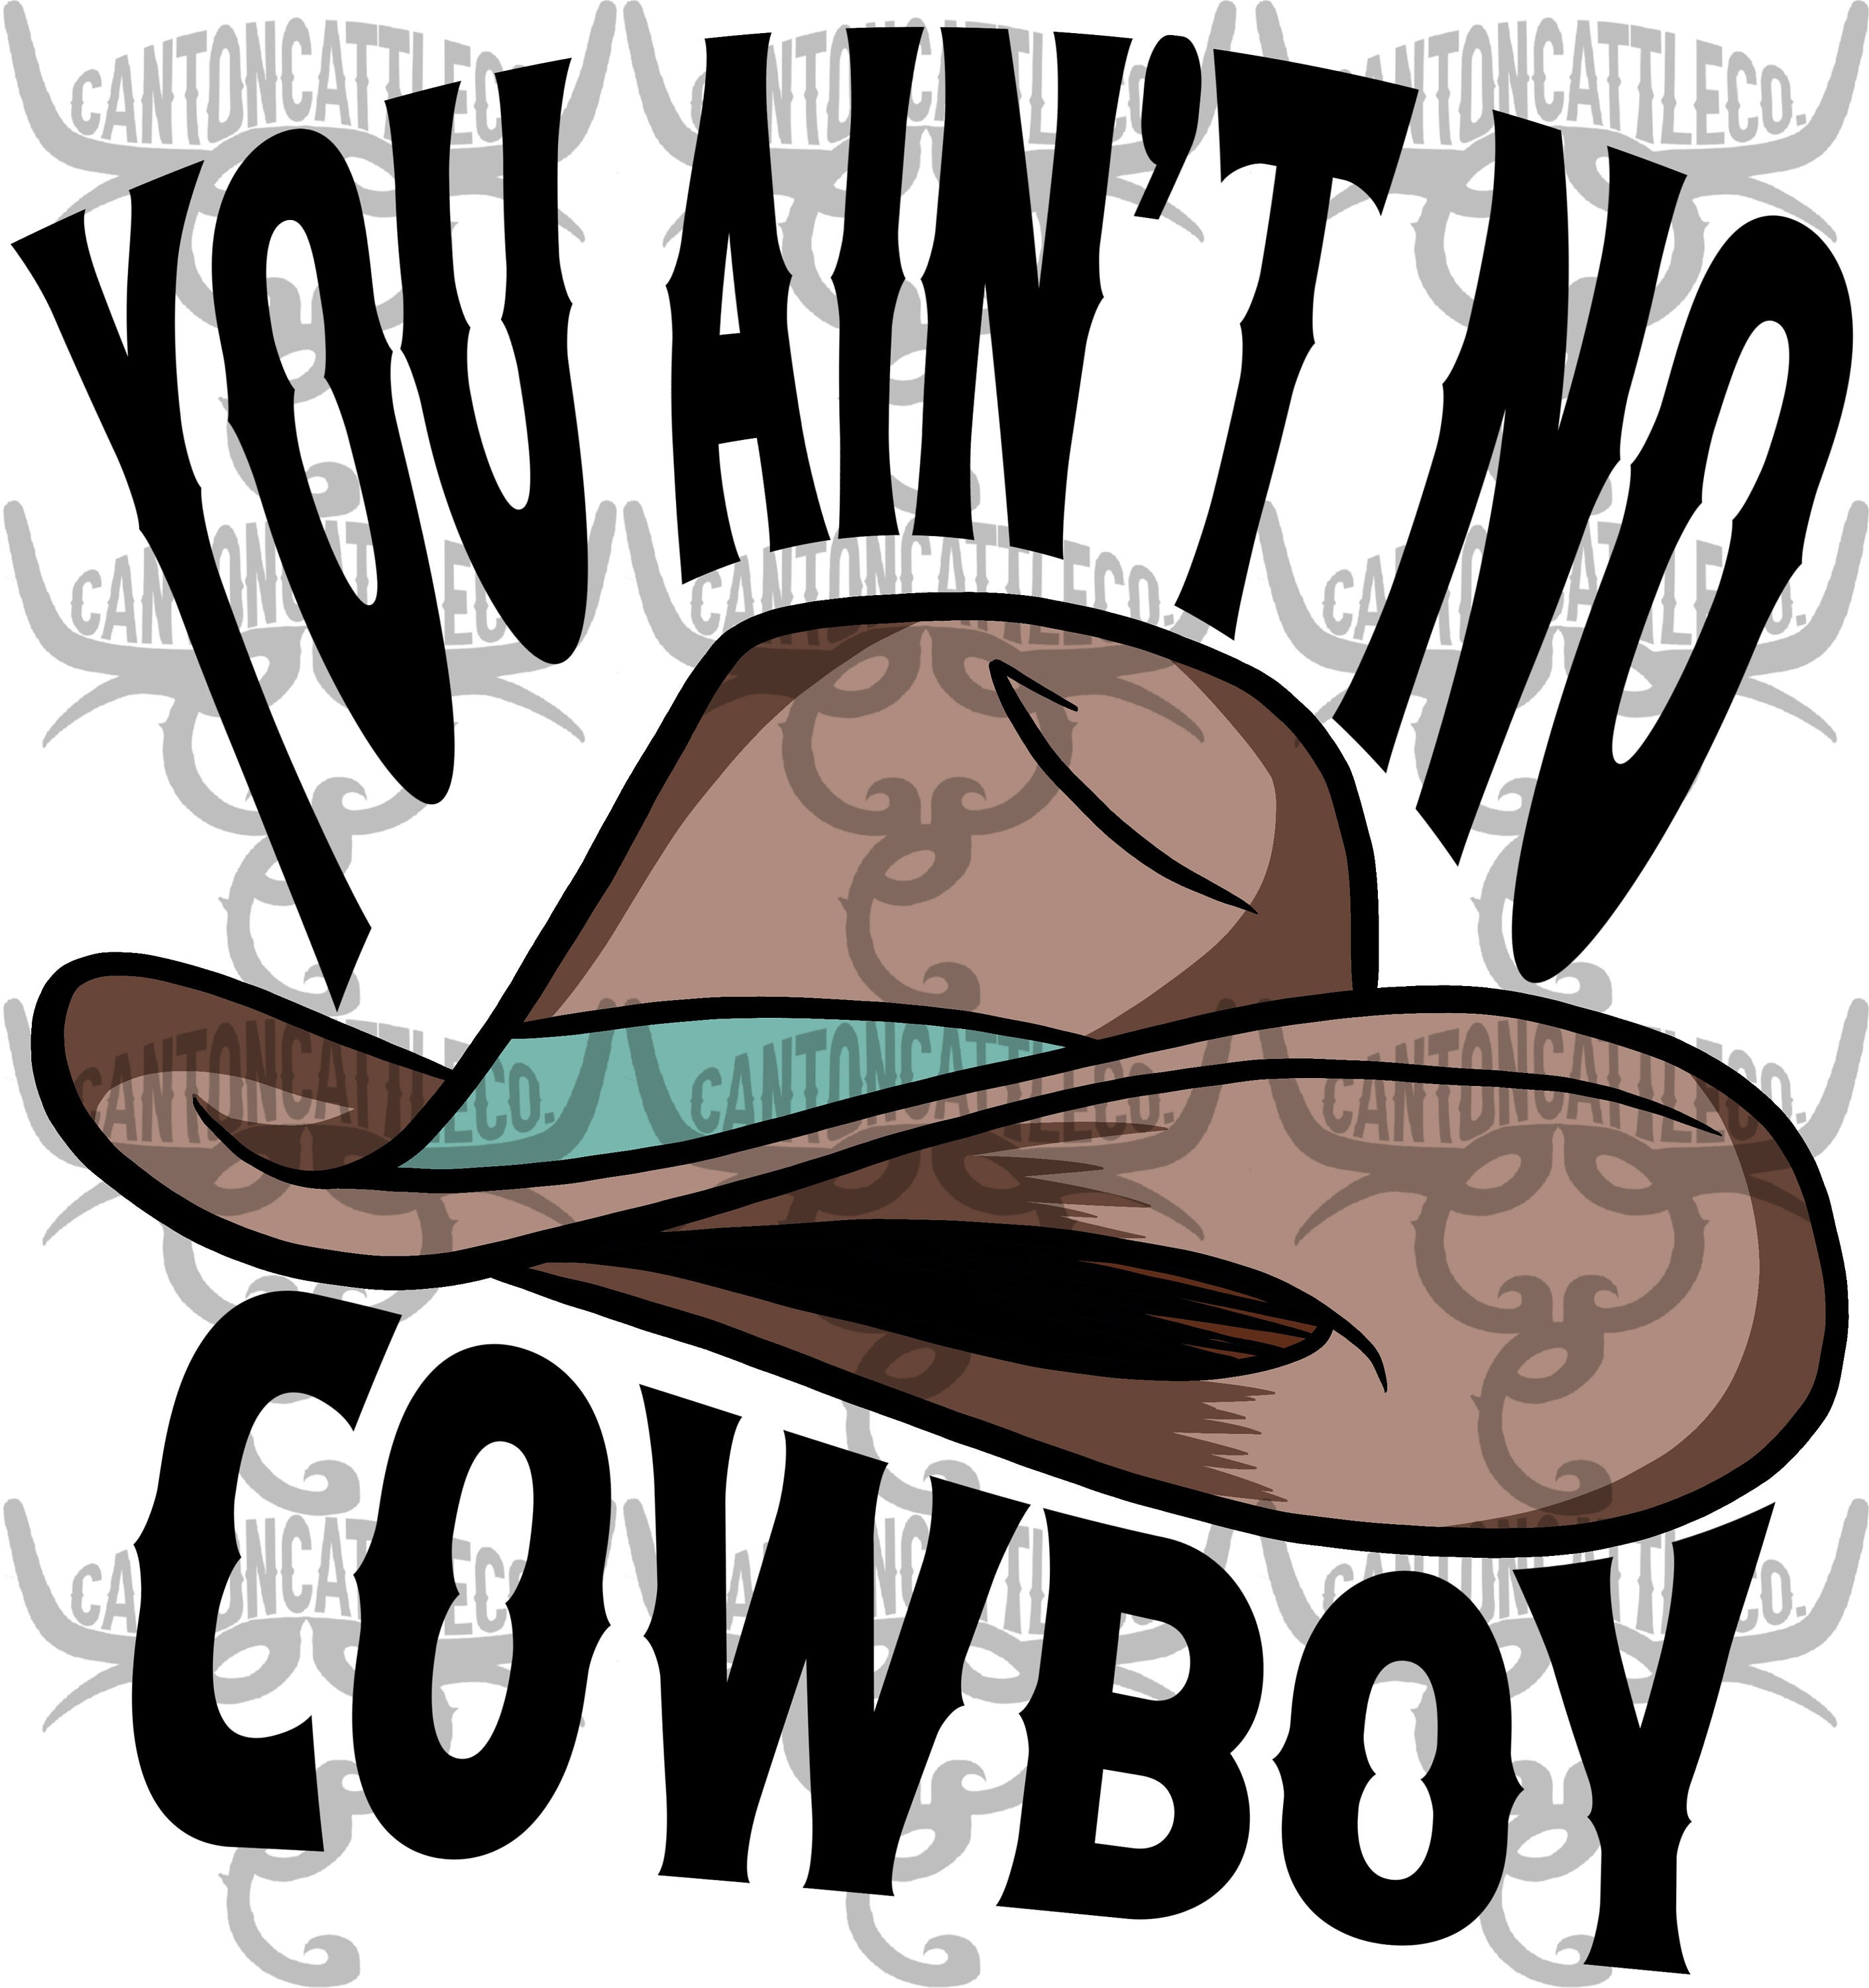 You ain't no cowboy (The Hangman)